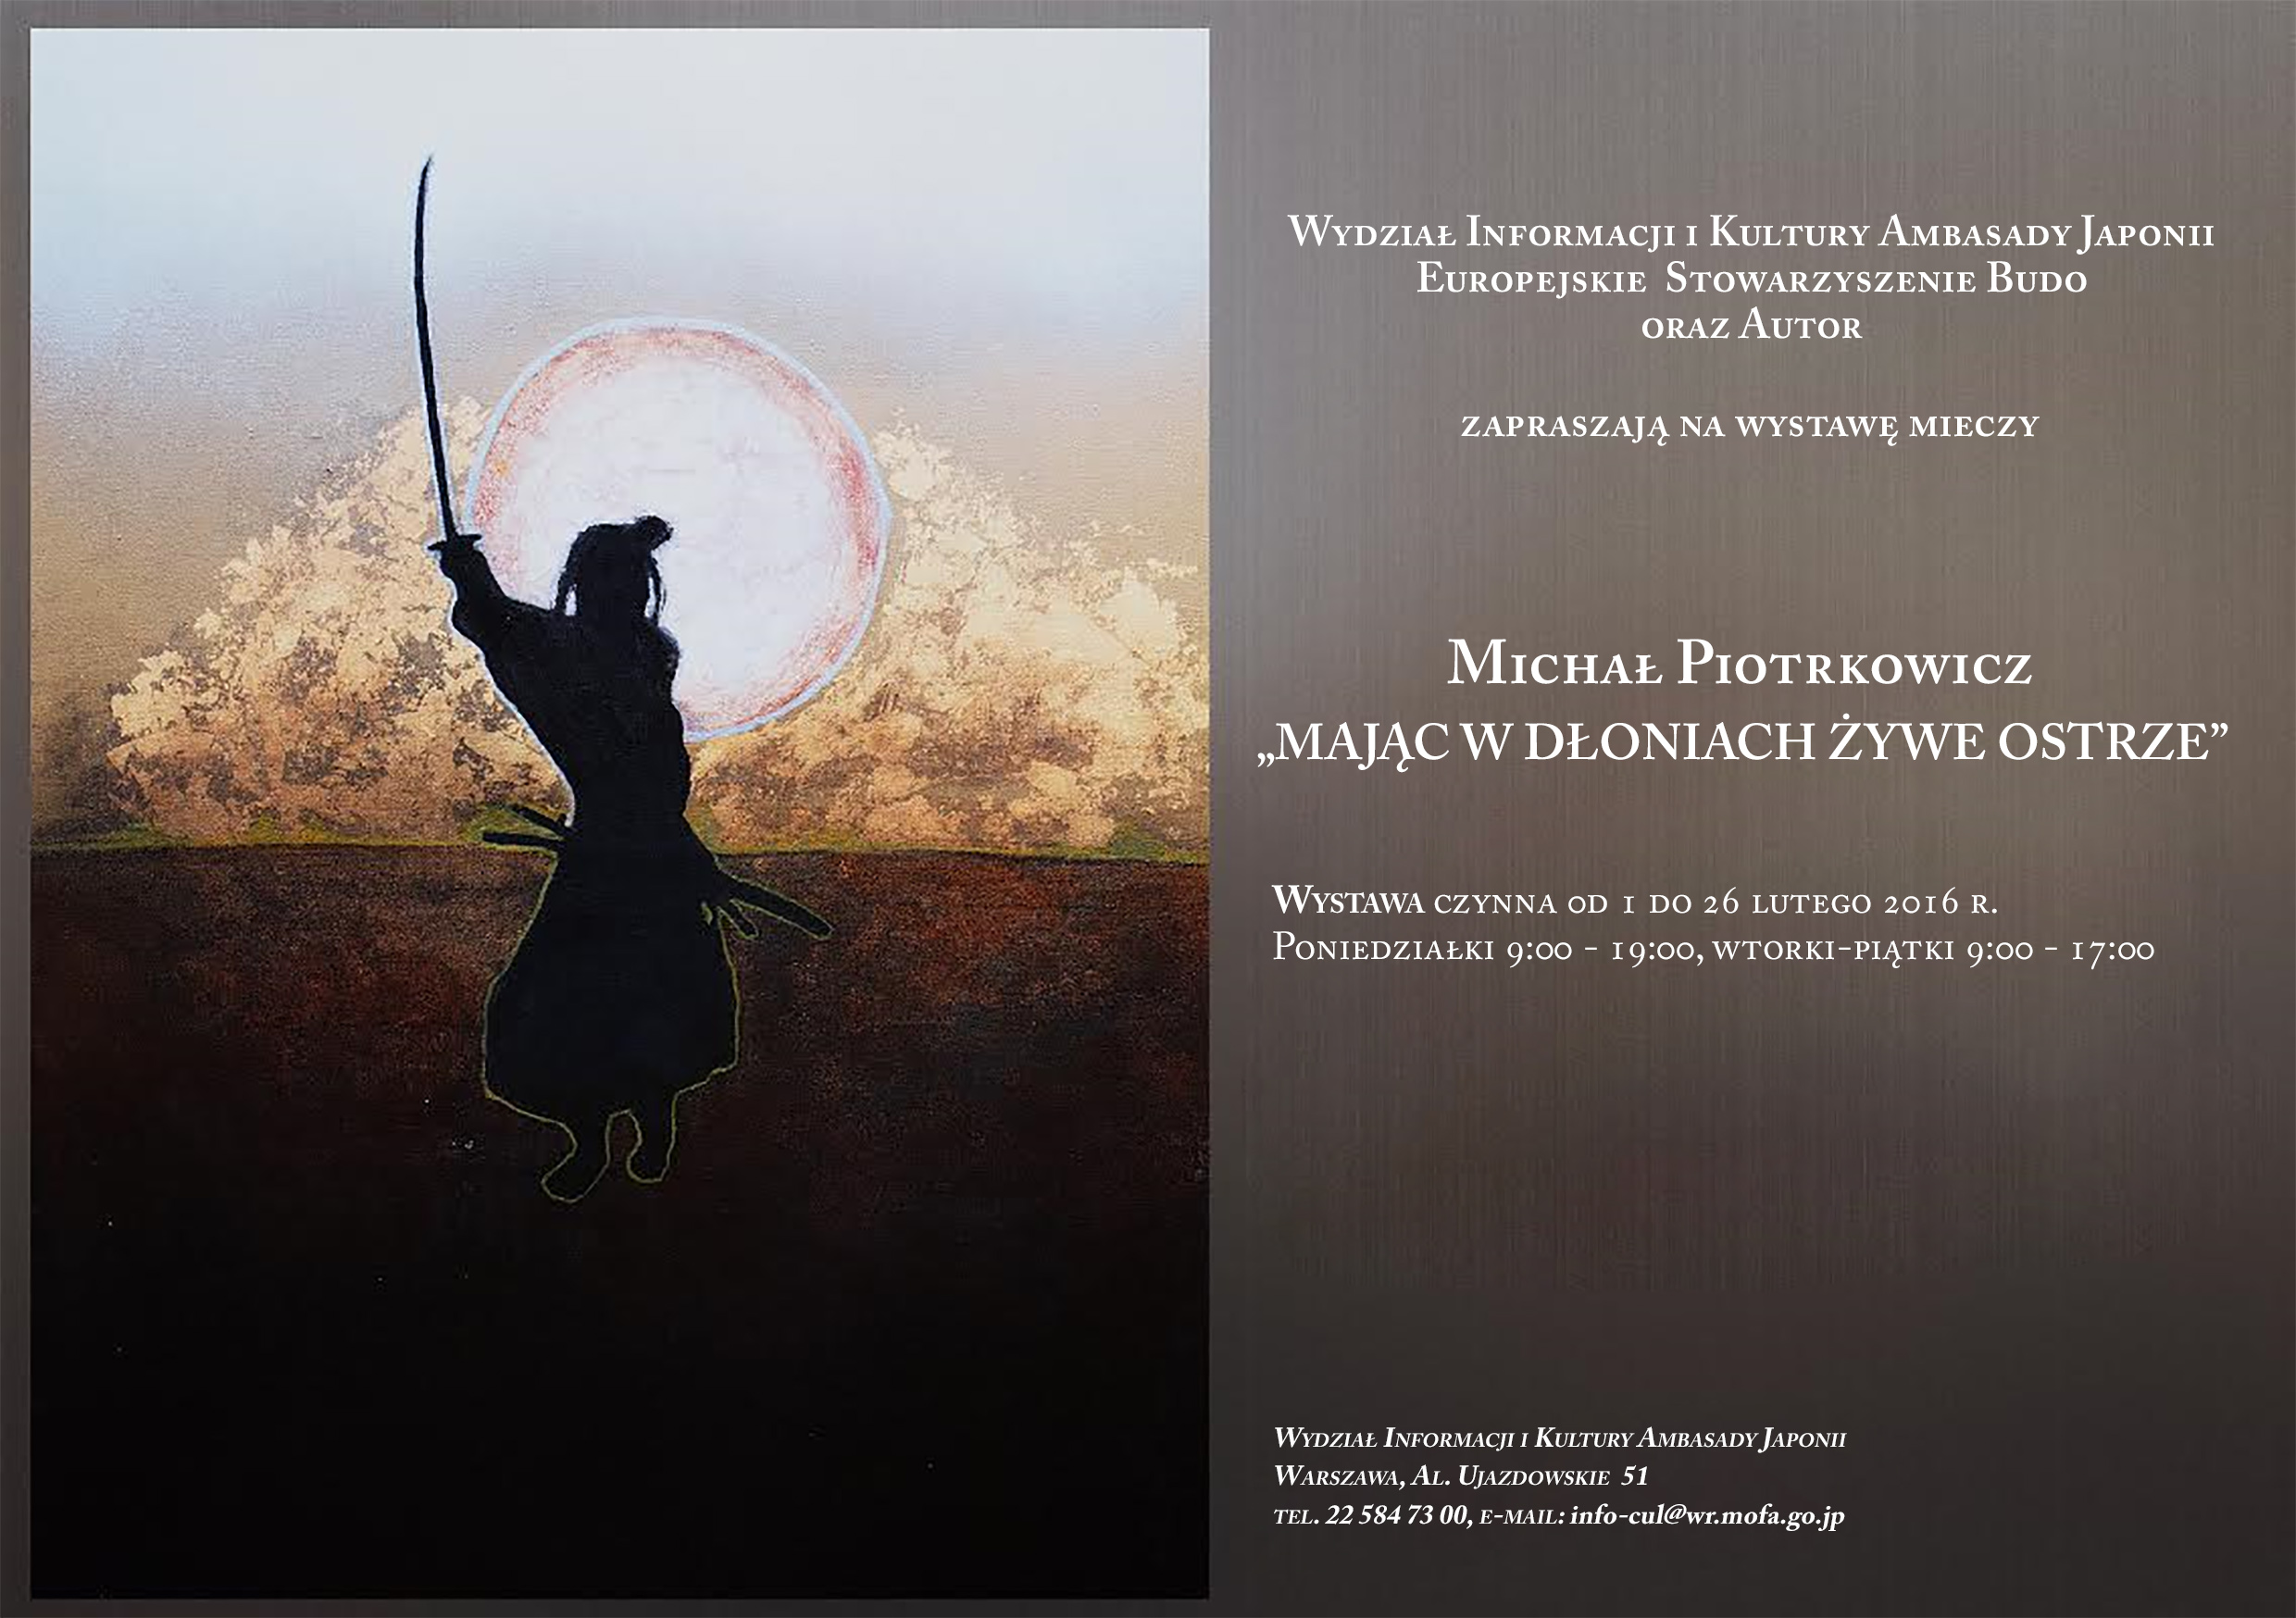 wystawa mieczy samurajskich, oprawa: Michał Piotrkowicz